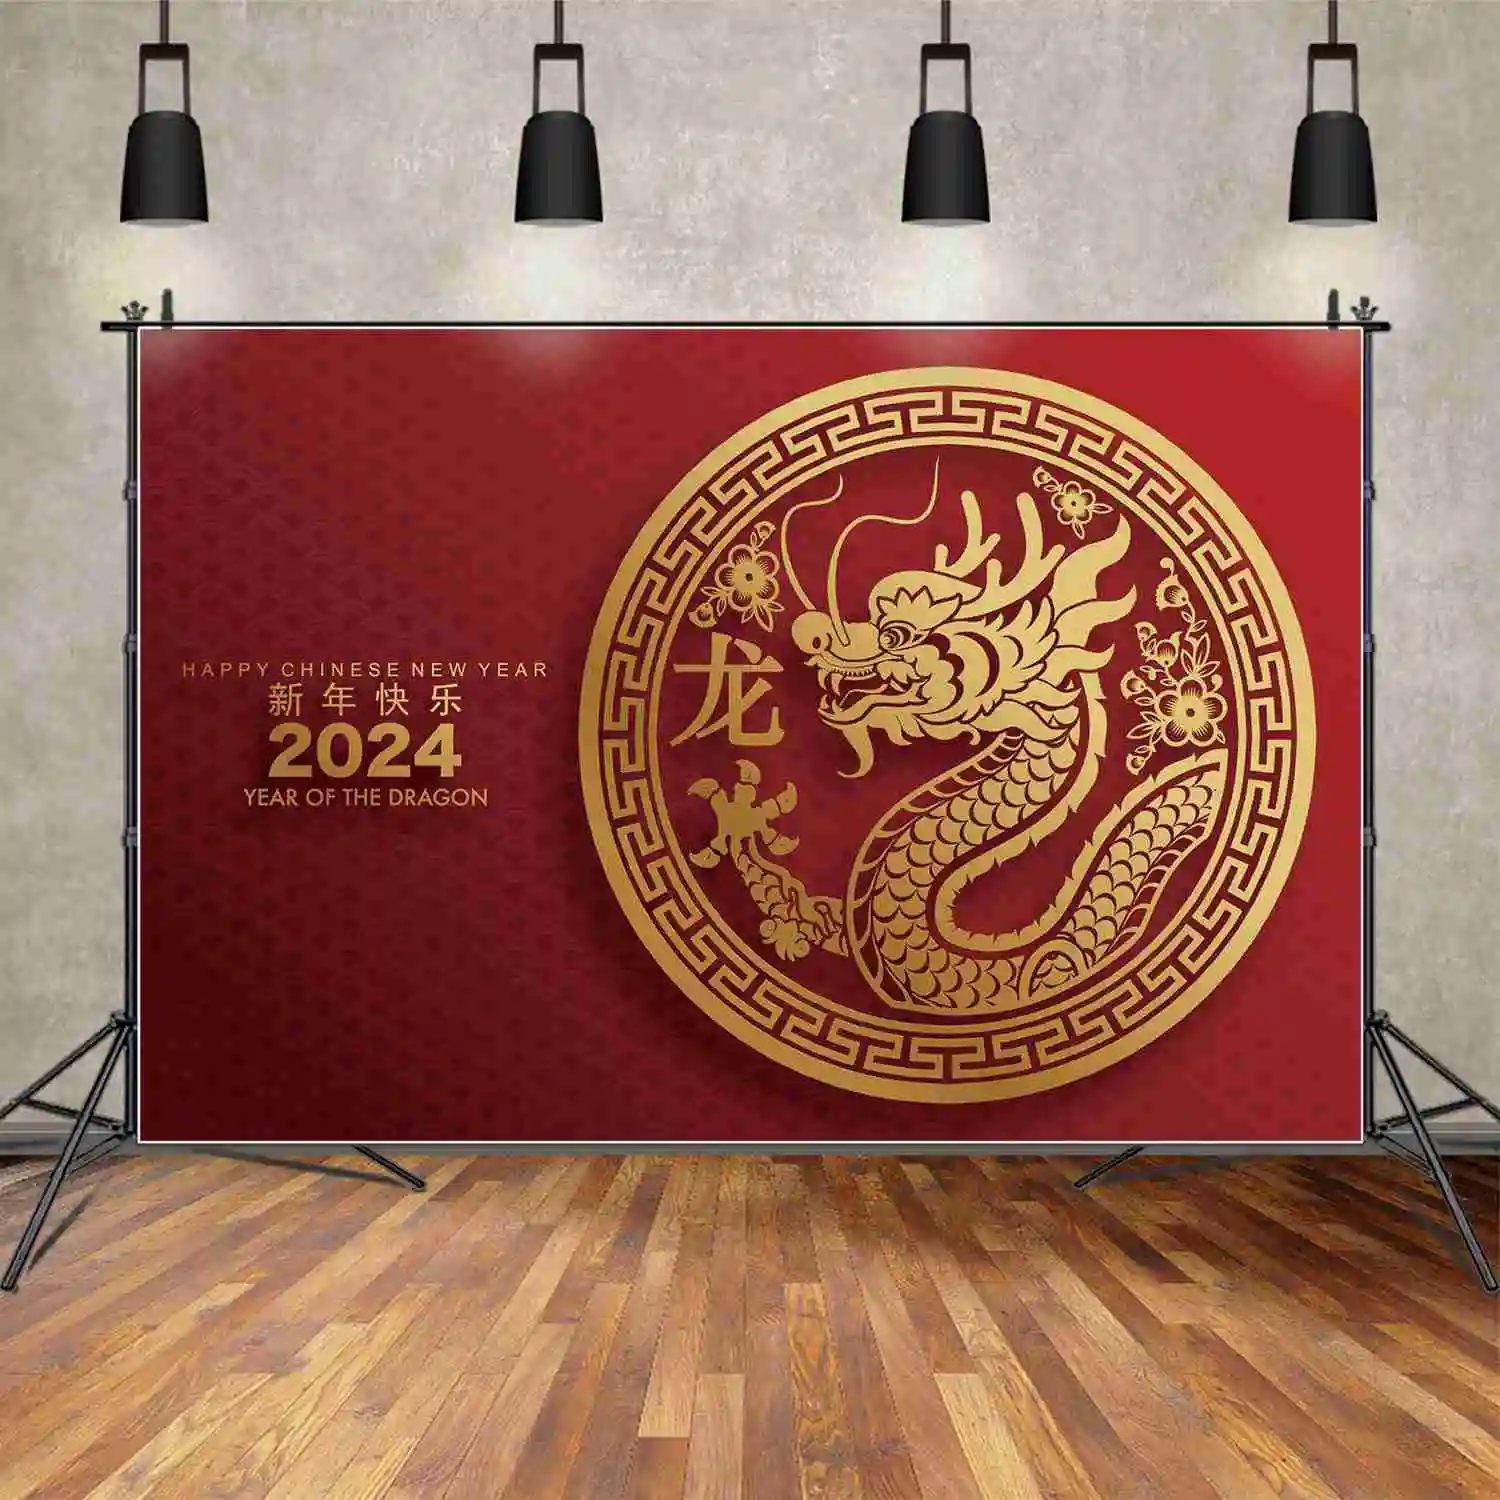 ЛУНА. QG Фон Фотография Весенний Фестиваль С Китайским Новым Годом 2024 Дракон Красное Знамя Пользовательский Семейный Фотографический Фон